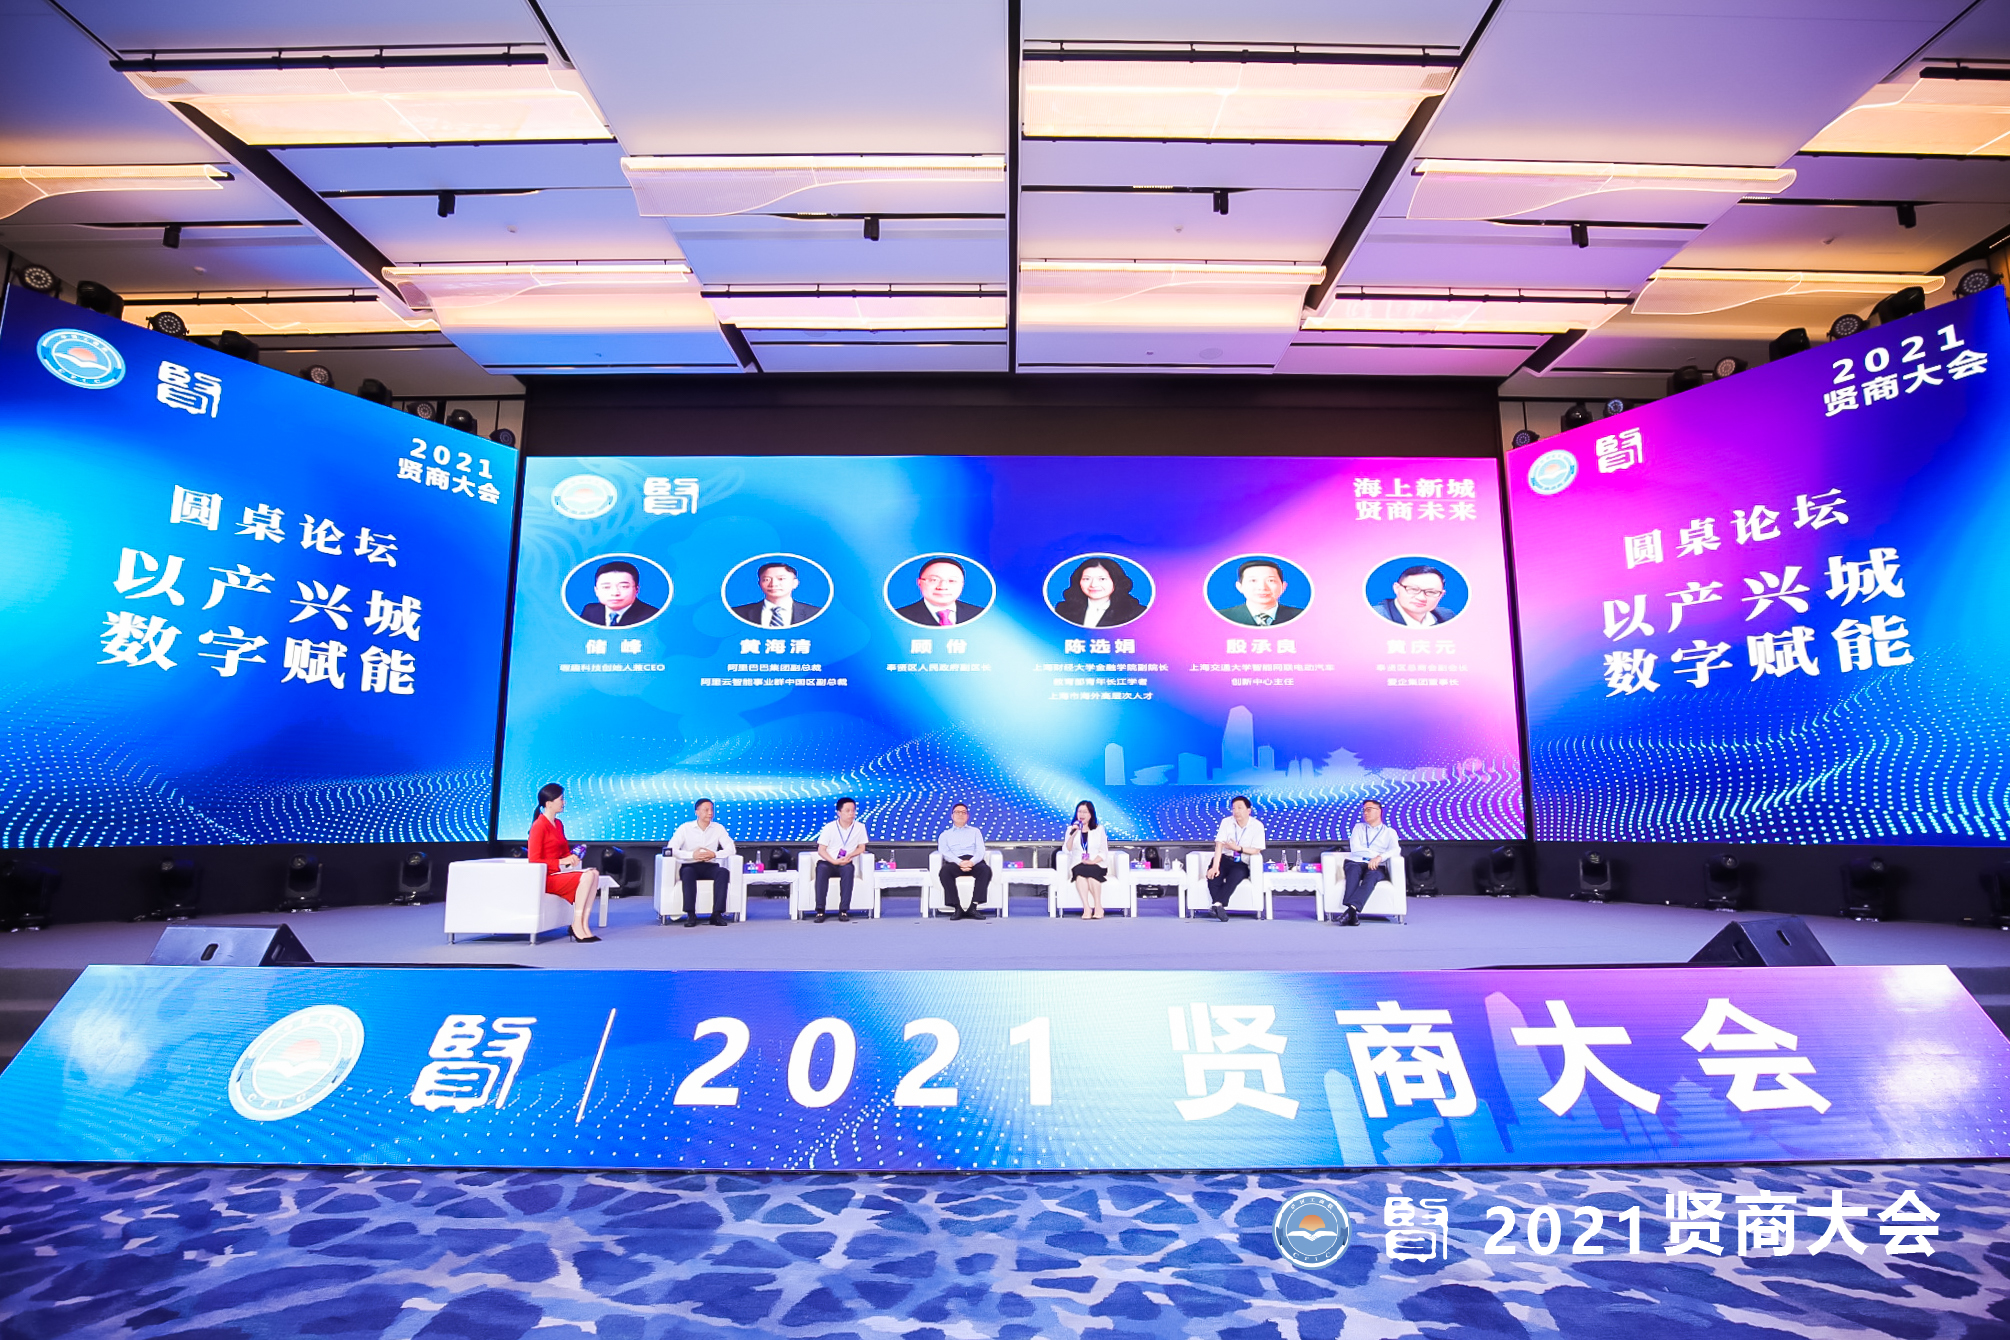 2021贤商大会在上海奉贤区圆满举行